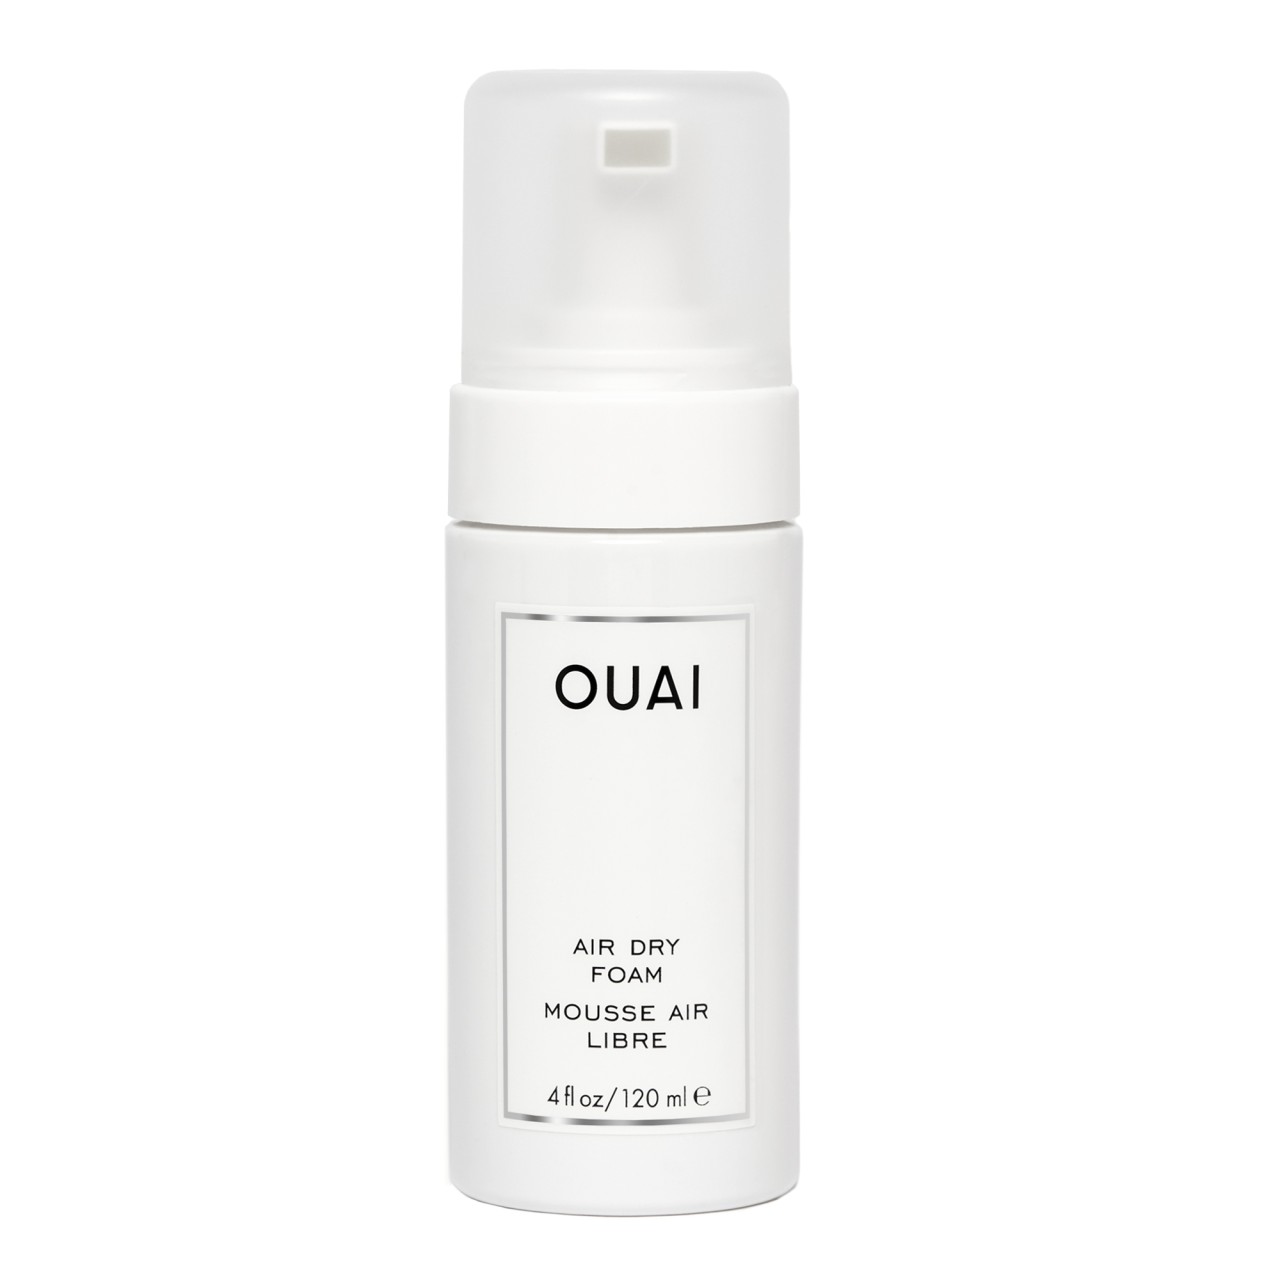 OUAI - Air Dry Foam - 